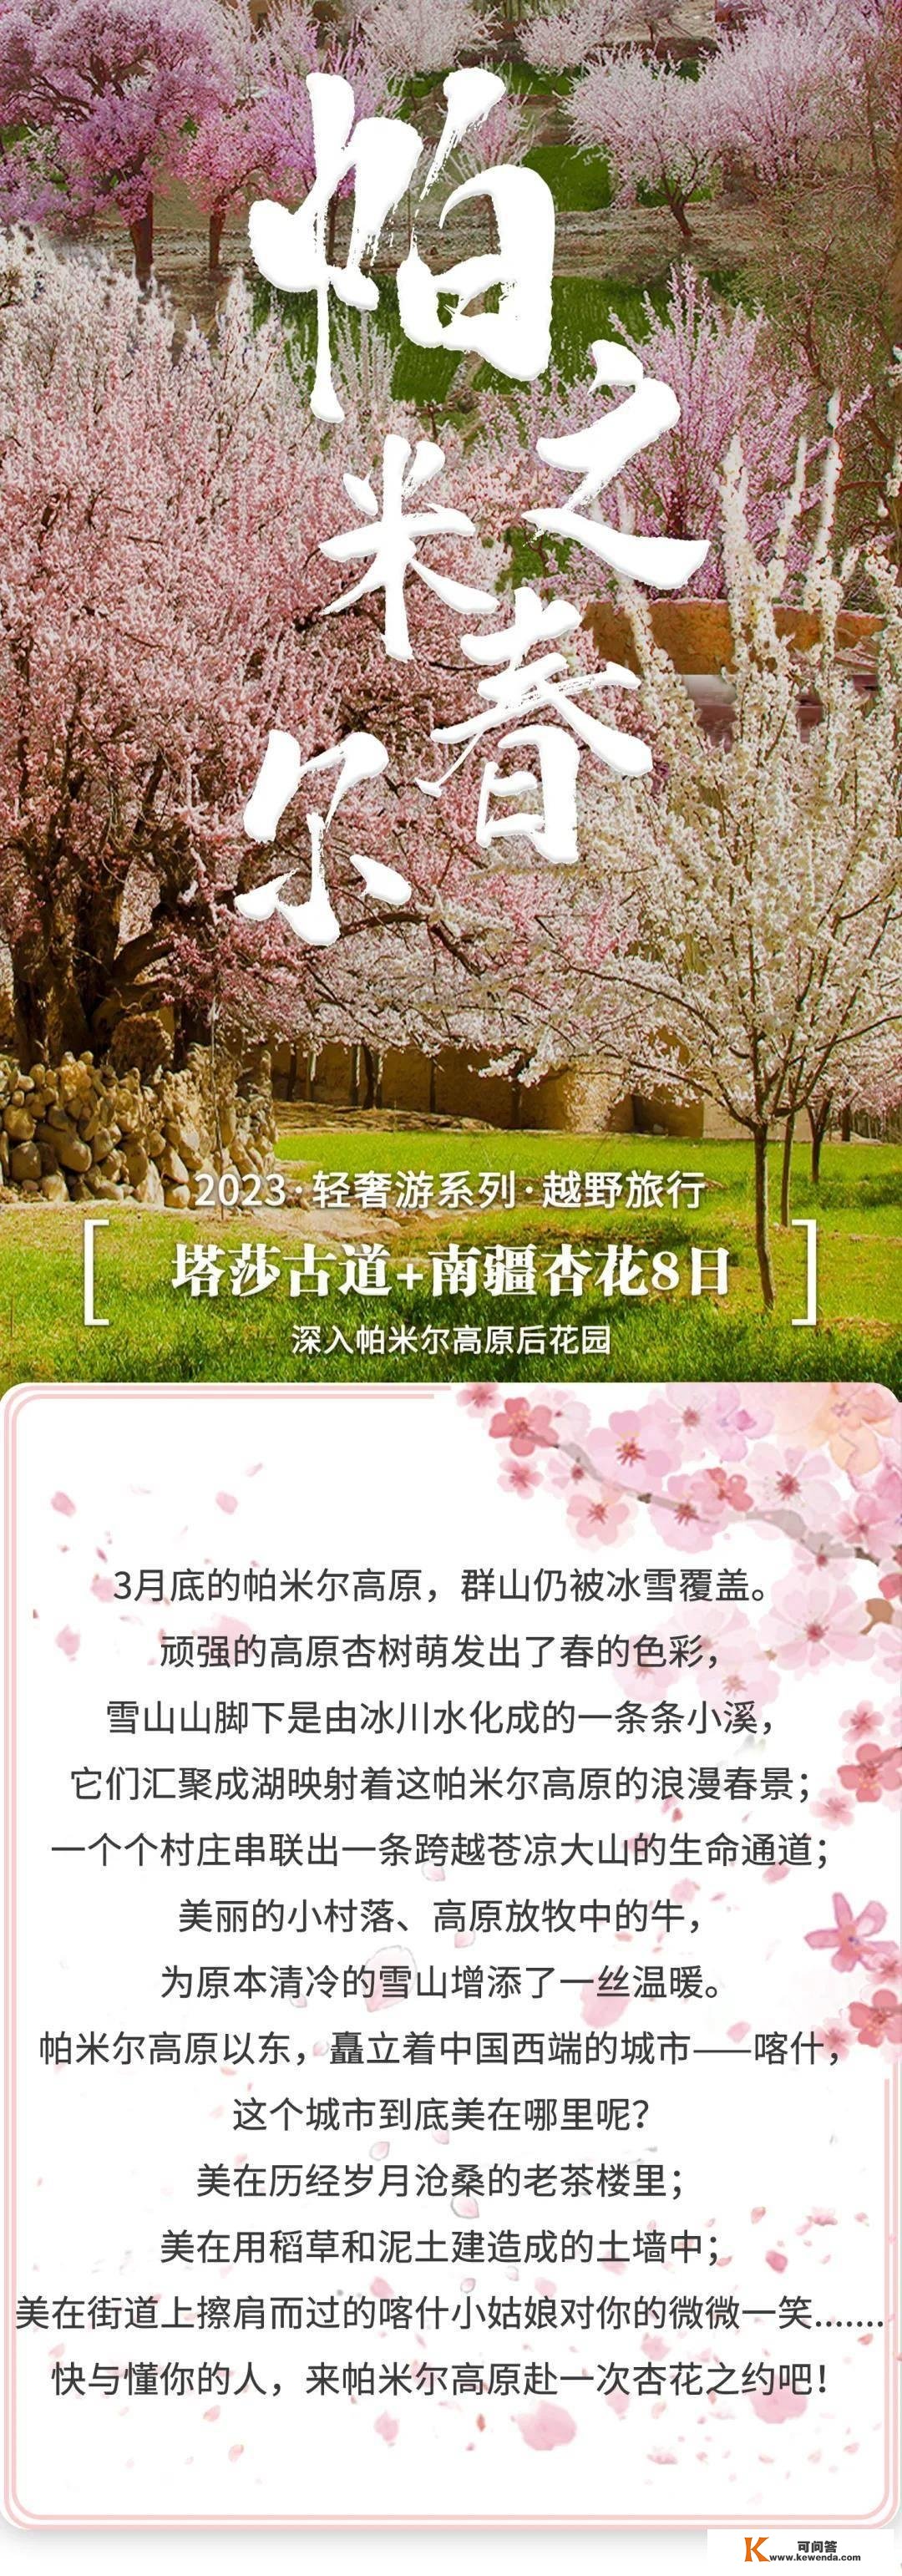 帕米尔之春—塔莎古道南疆杏花摄影8日